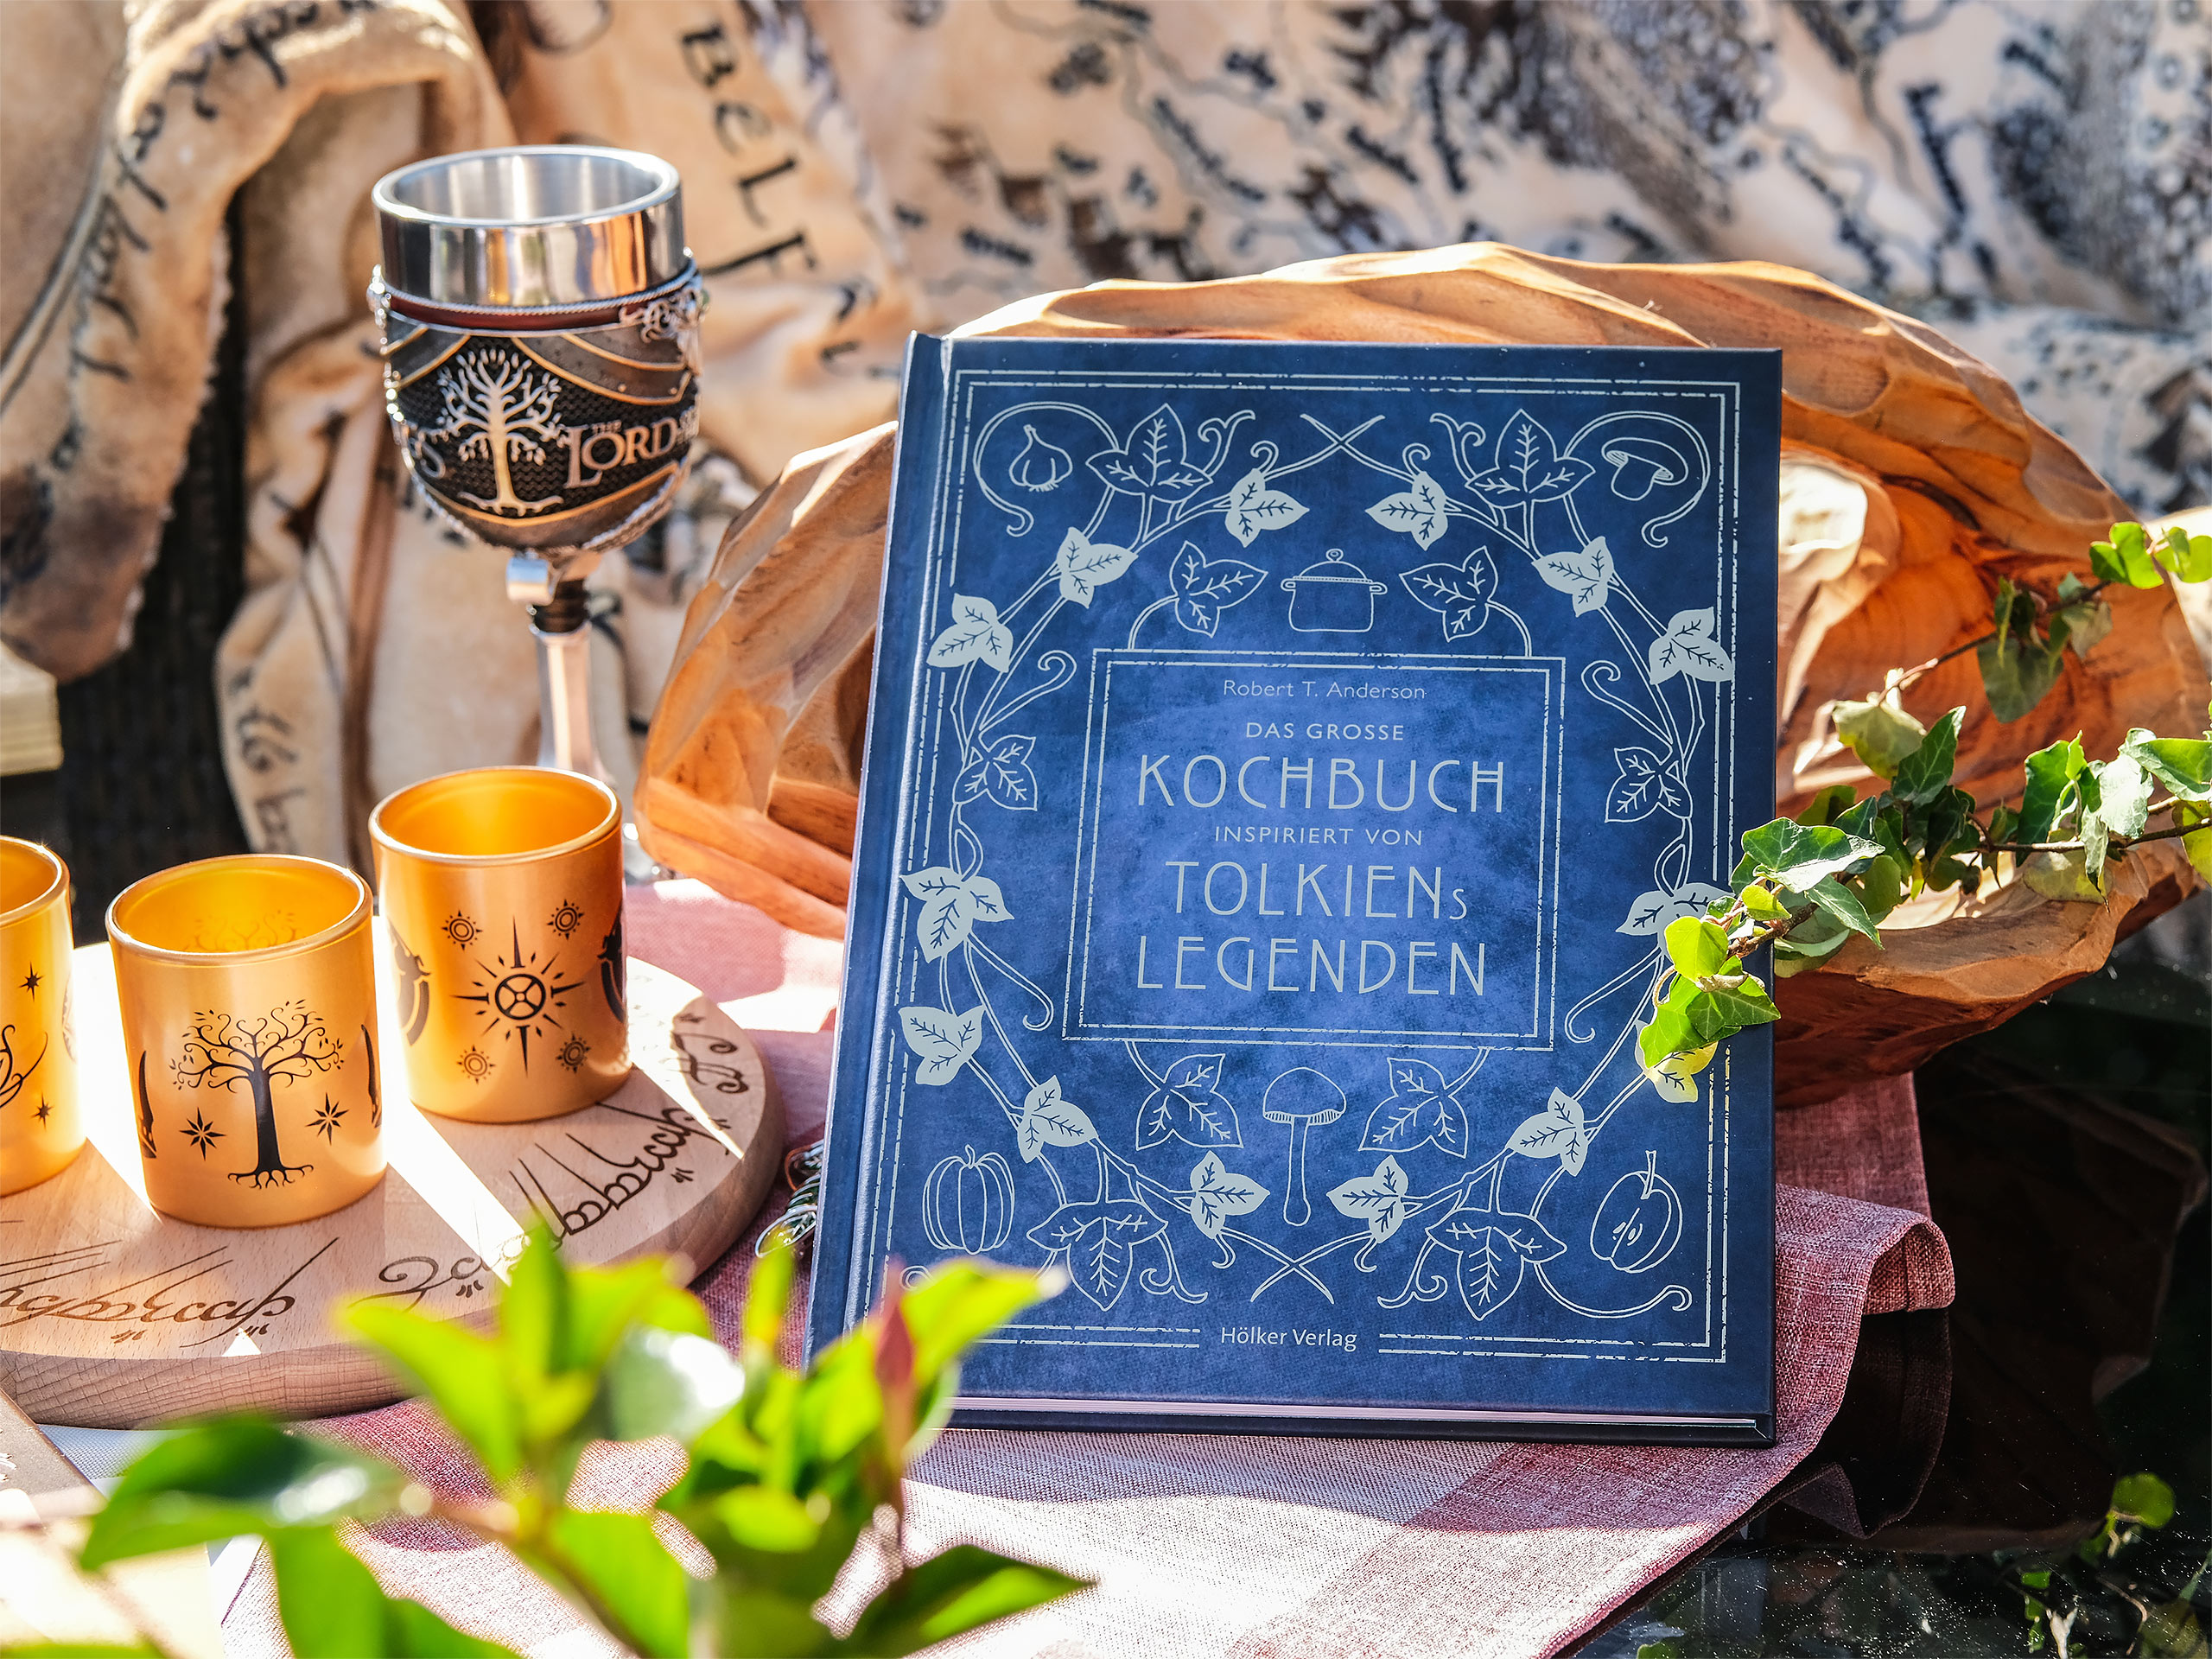 Het grote kookboek geïnspireerd door Tolkien's legendes